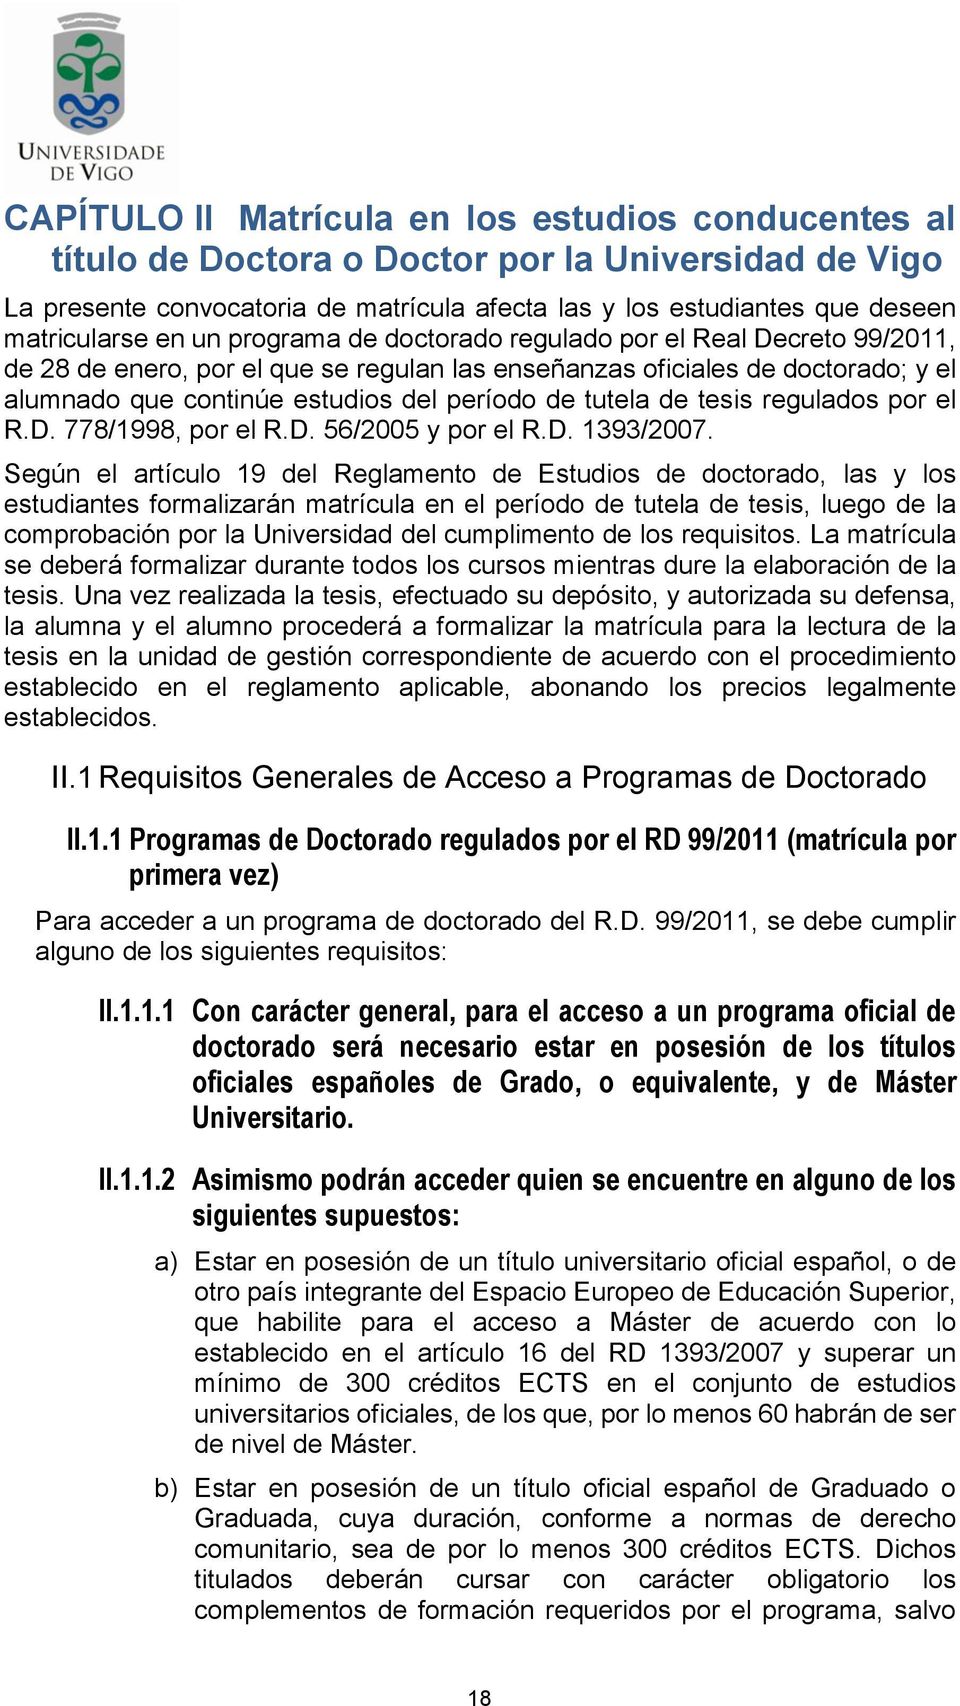 tutela de tesis regulados por el R.D. 778/1998, por el R.D. 56/2005 y por el R.D. 1393/2007.